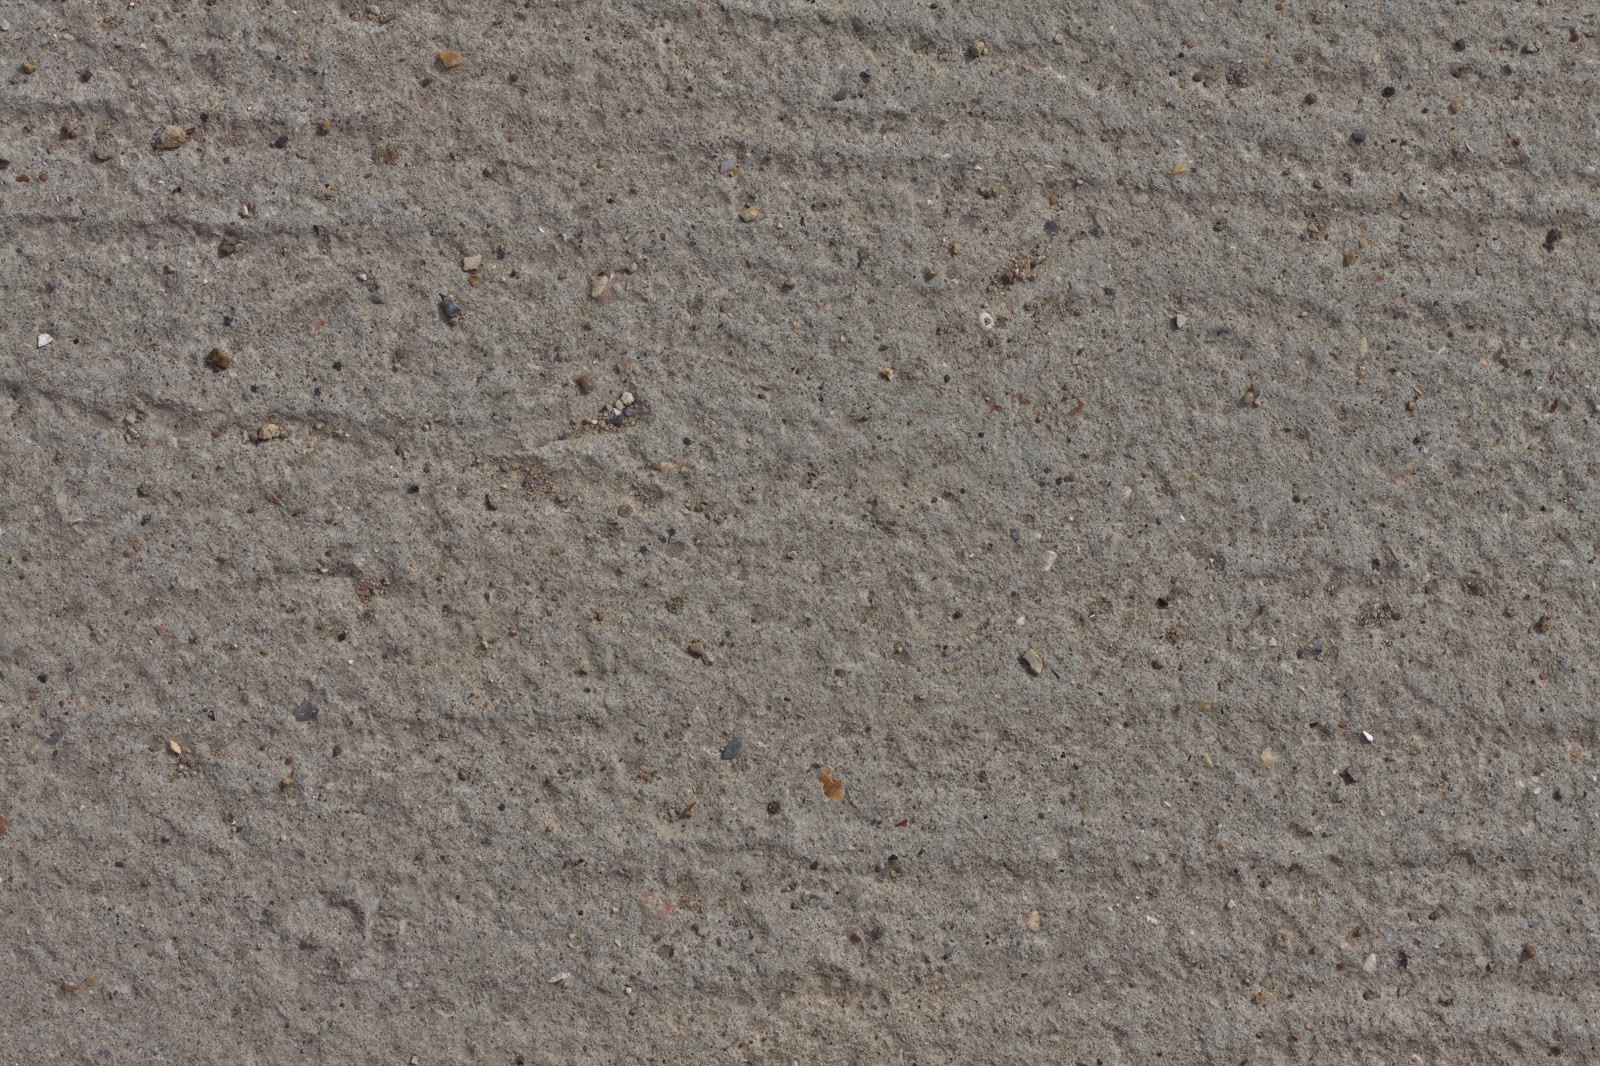 Concrete ground floor walkway pathway texture ver 3